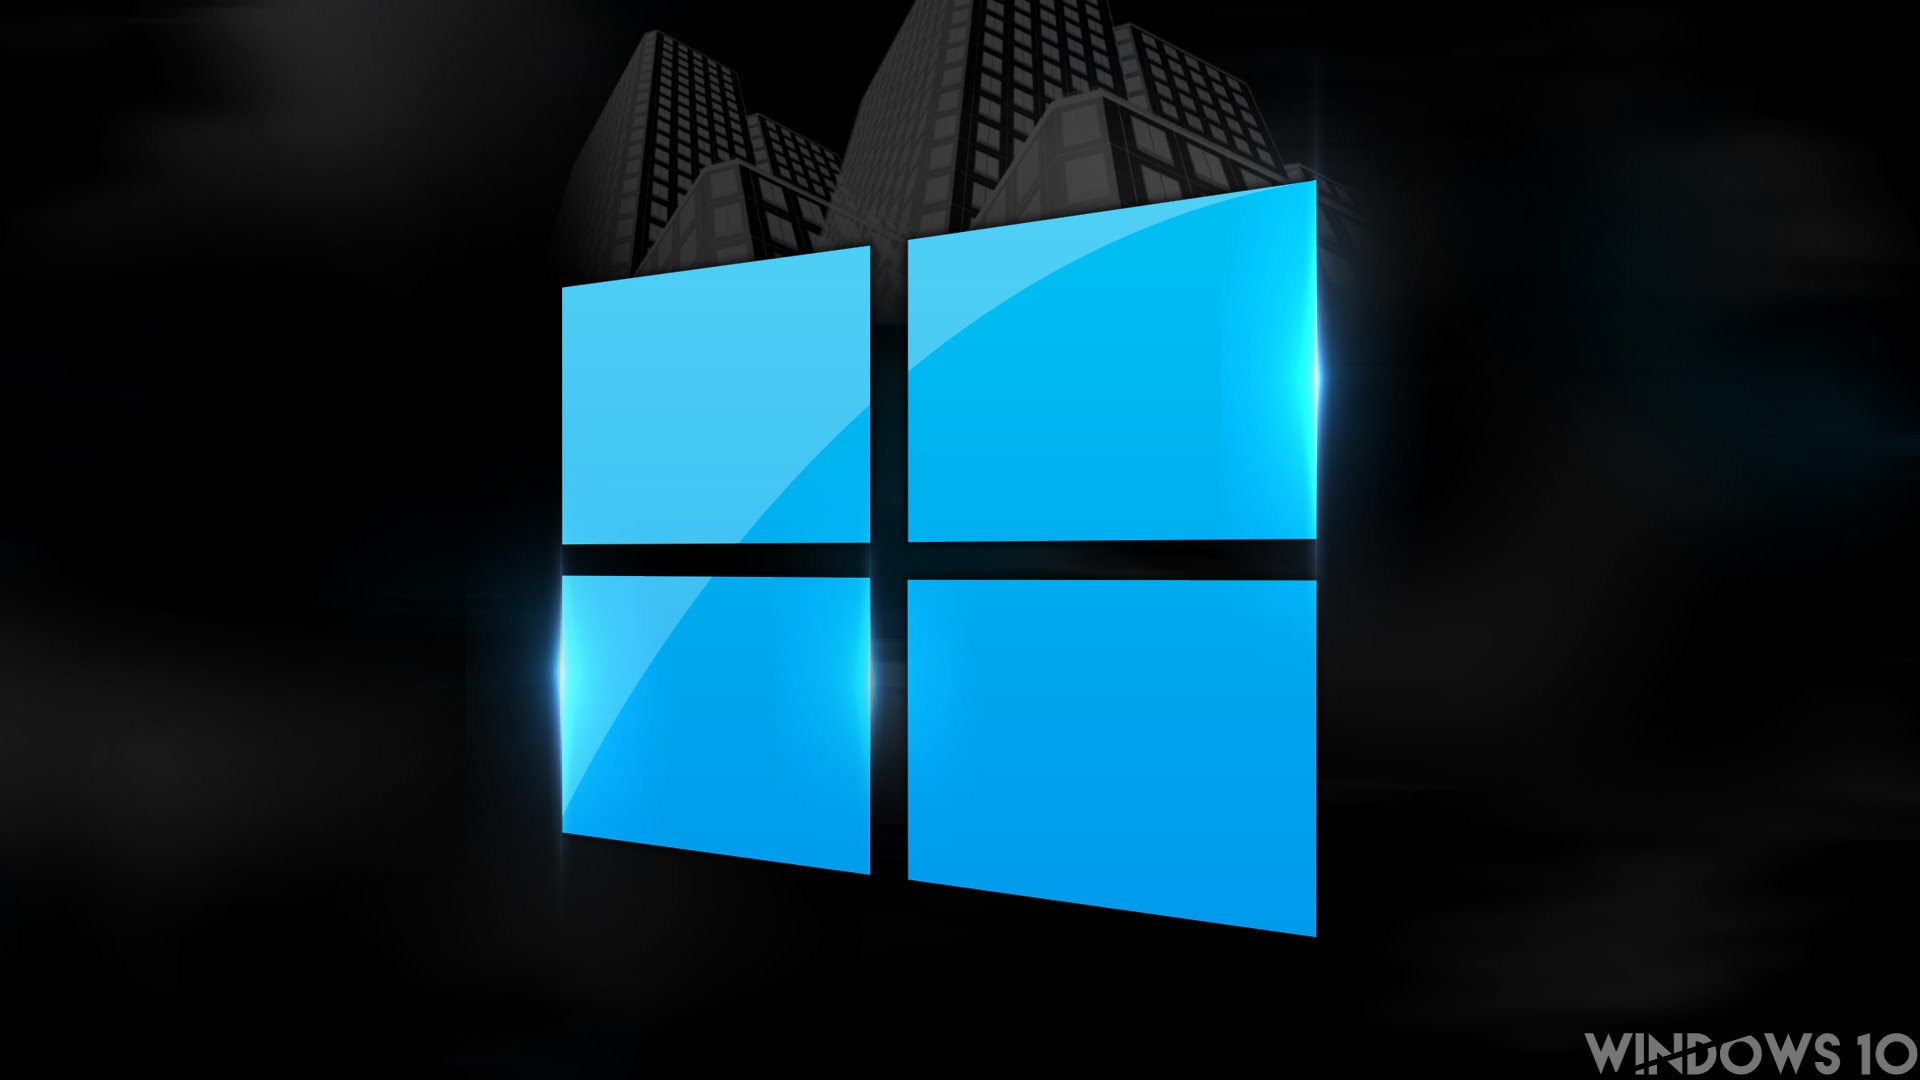 Best Windows 10 Wallpapers Hd - HD Wallpaper 